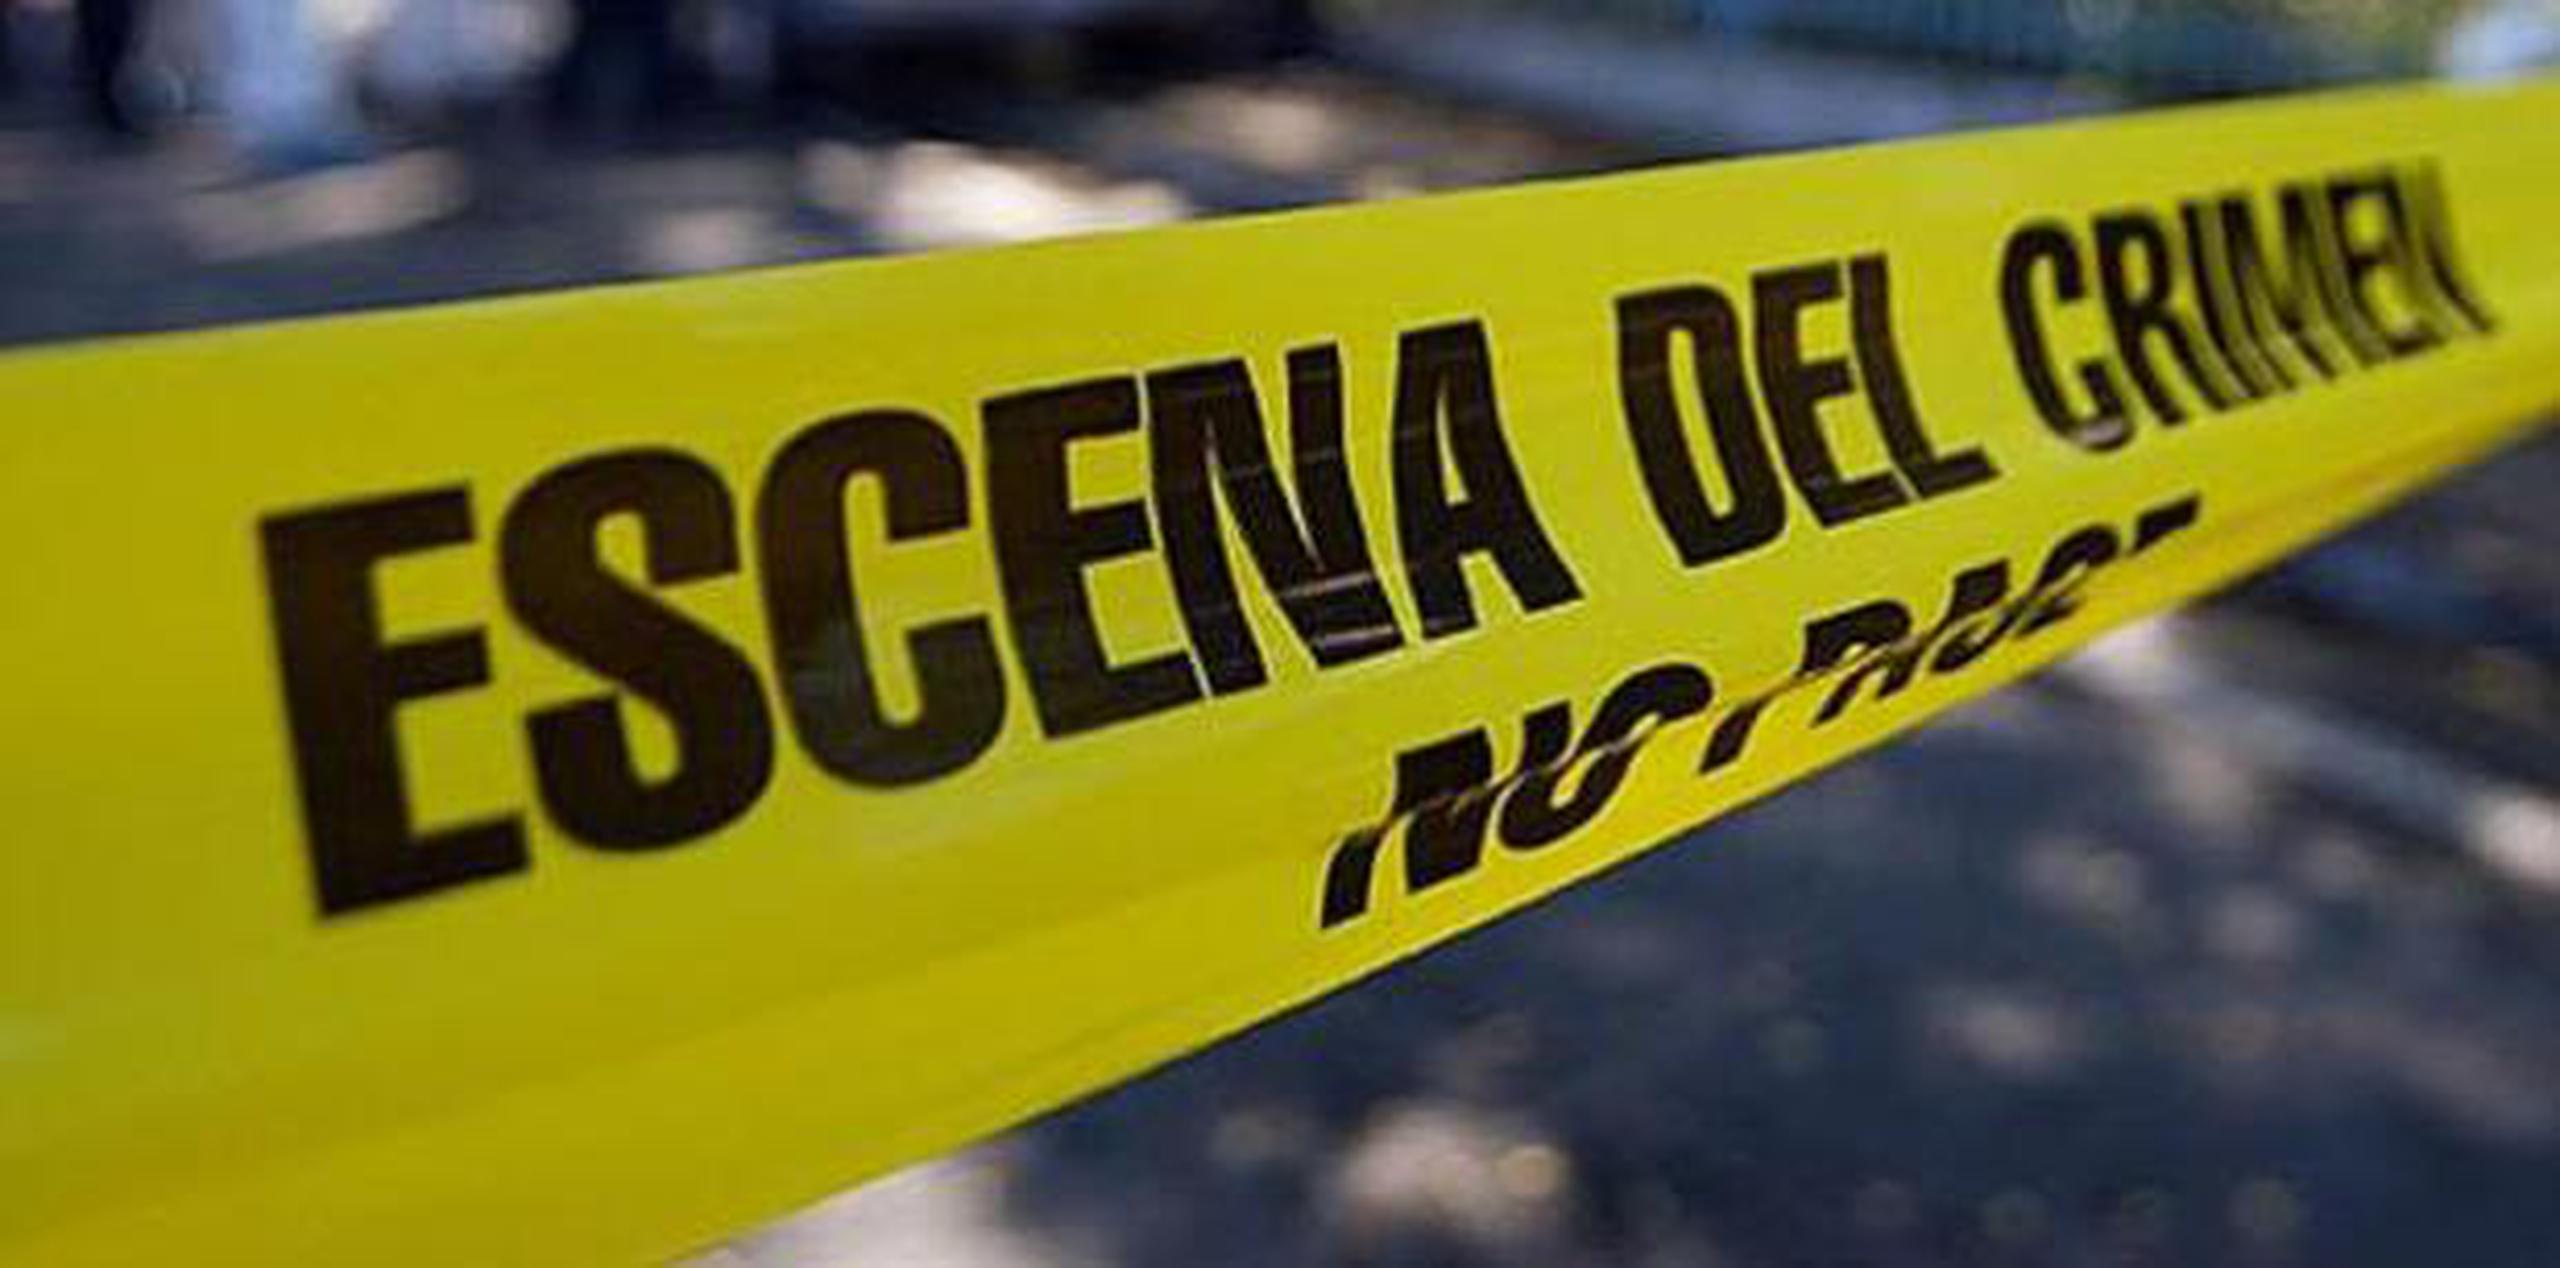 Agentes adscritos a la División de Homicidios de San Juan investigan en asesinato junto al fiscal de turno. (Archivo)